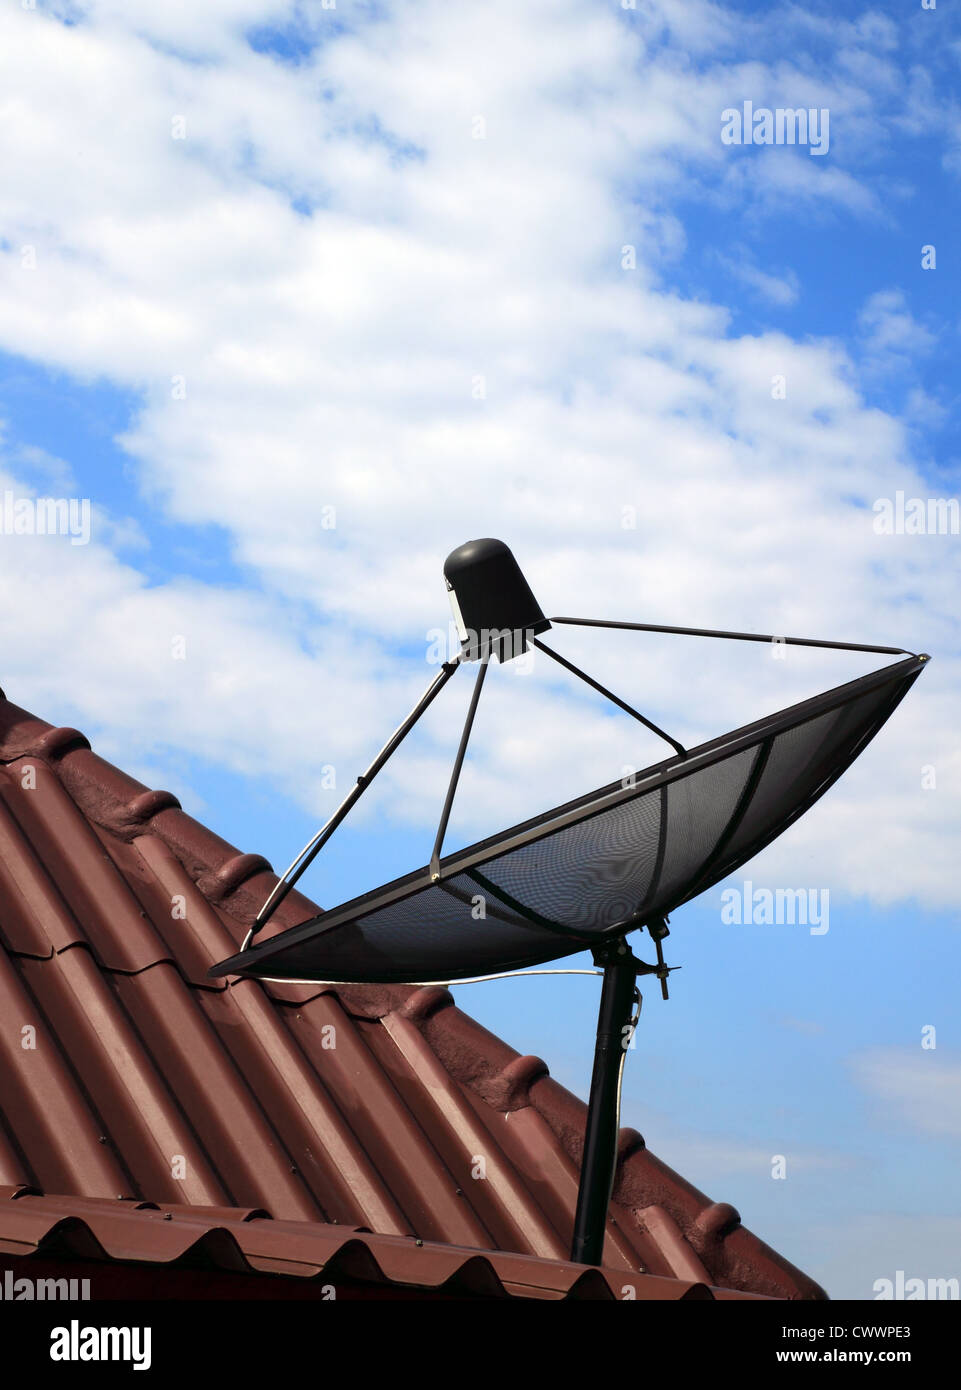 Black antenne parabolique sur le toit de maison Banque D'Images